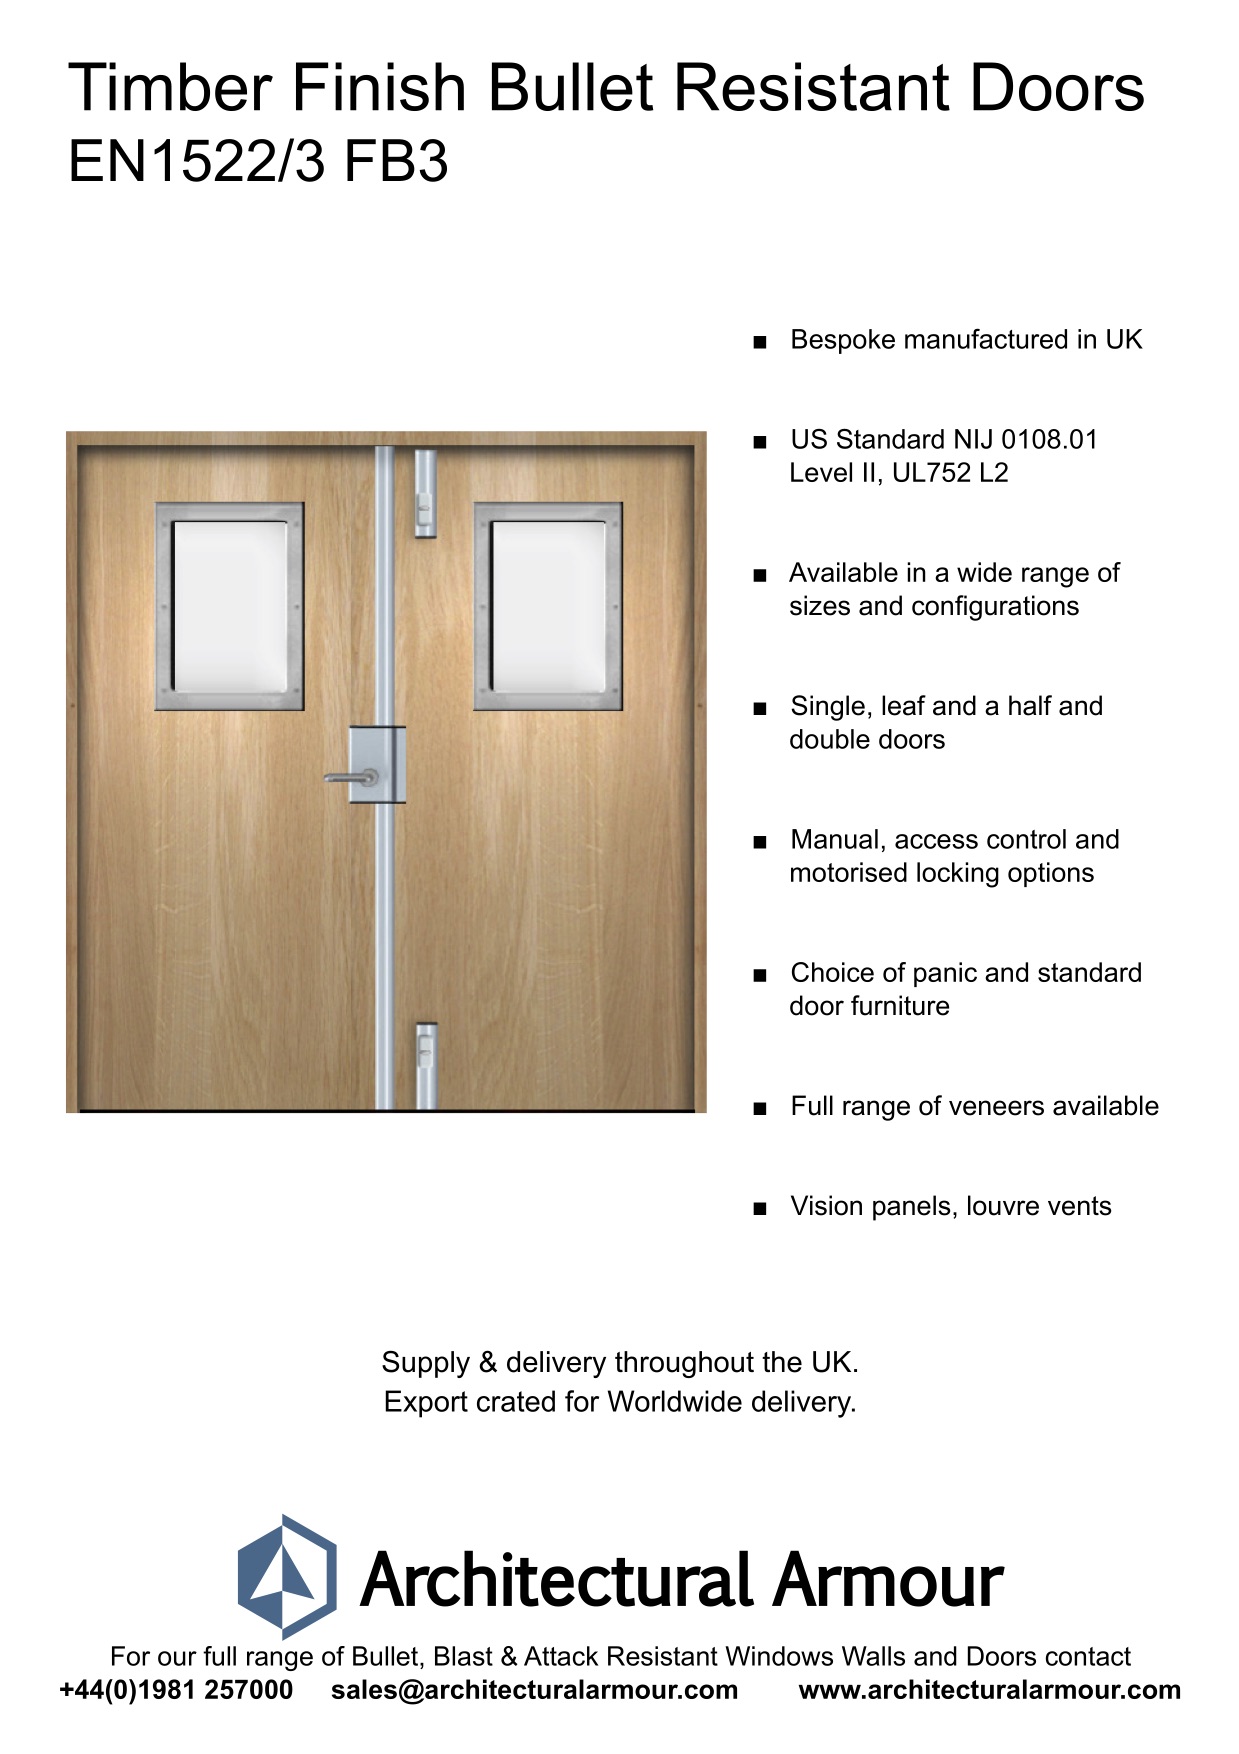 EN1522-3-FB3-Bulletproof-Doors-Vision-Panels